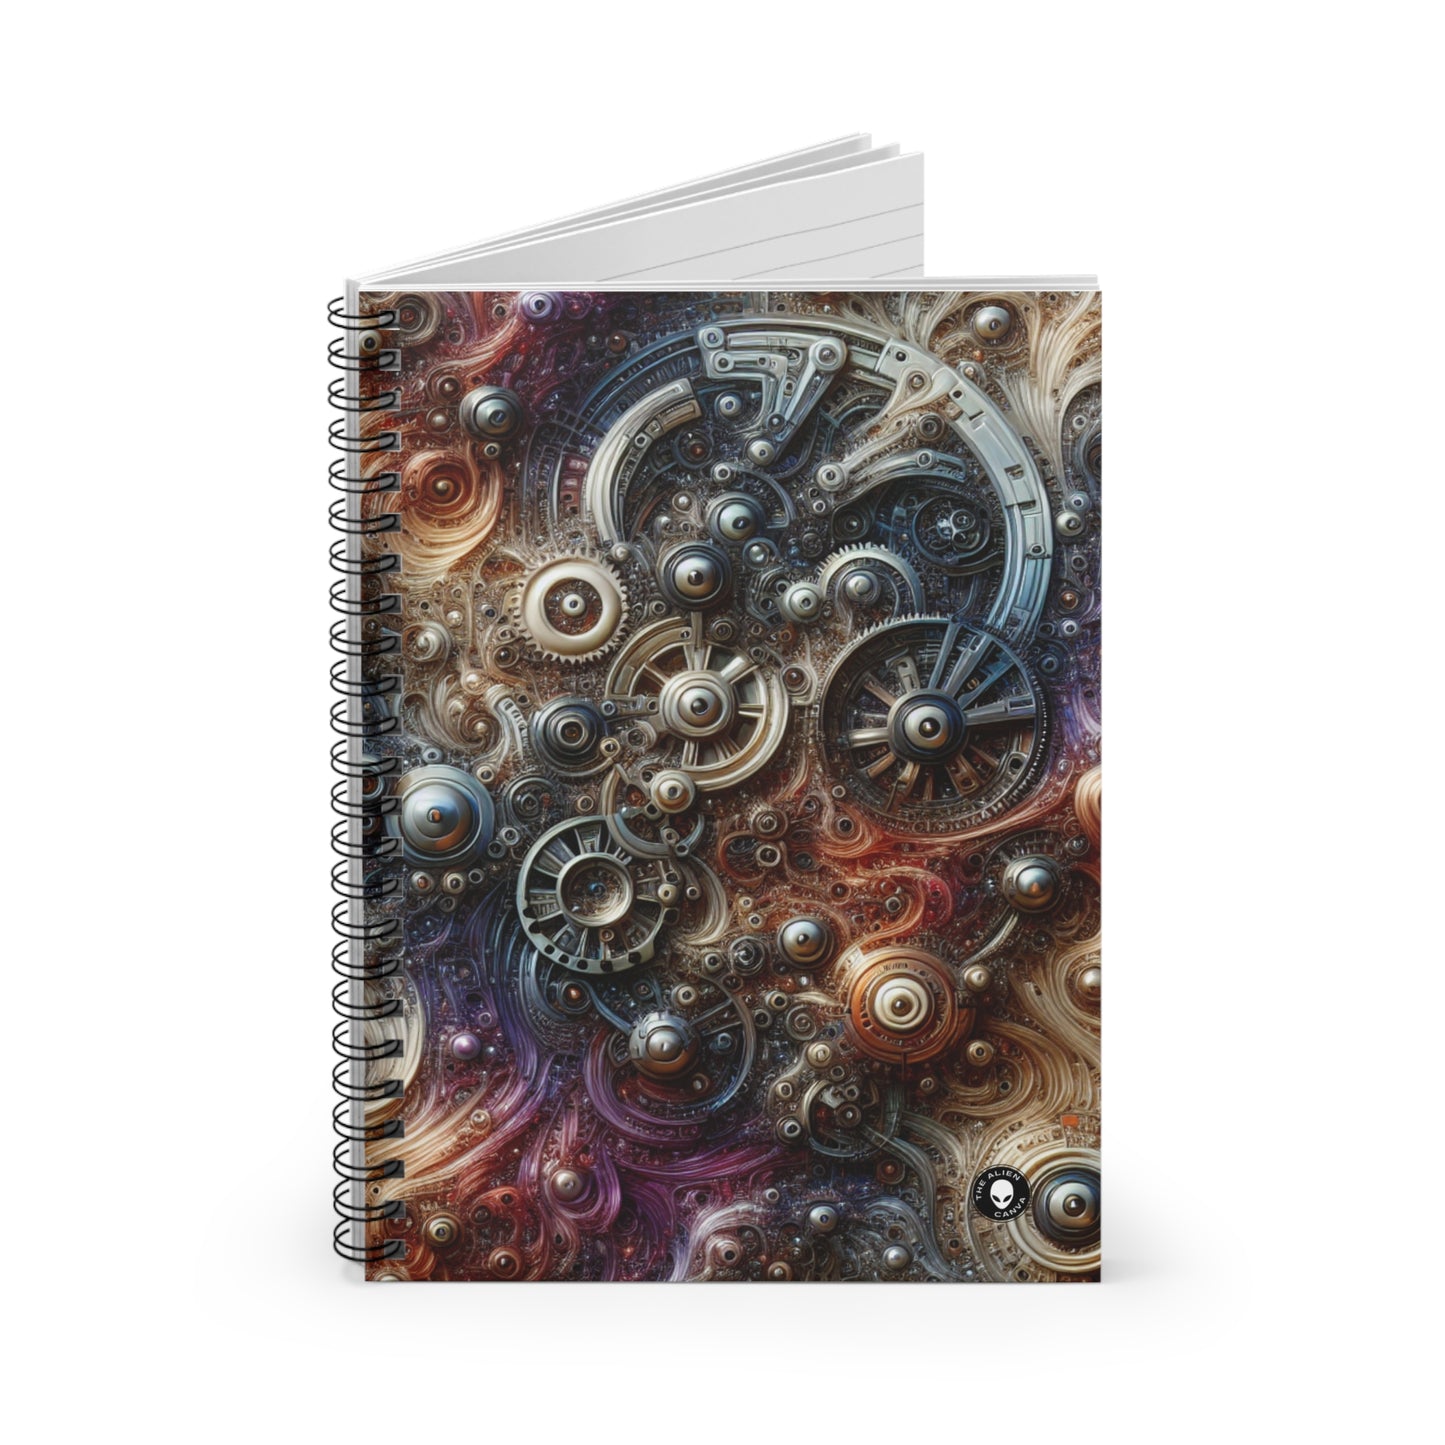 "Cybernetic Sentinel : Une fusion futuriste de l'homme et de la machine" - The Alien Spiral Notebook (Ruled Line) Art biomécanique